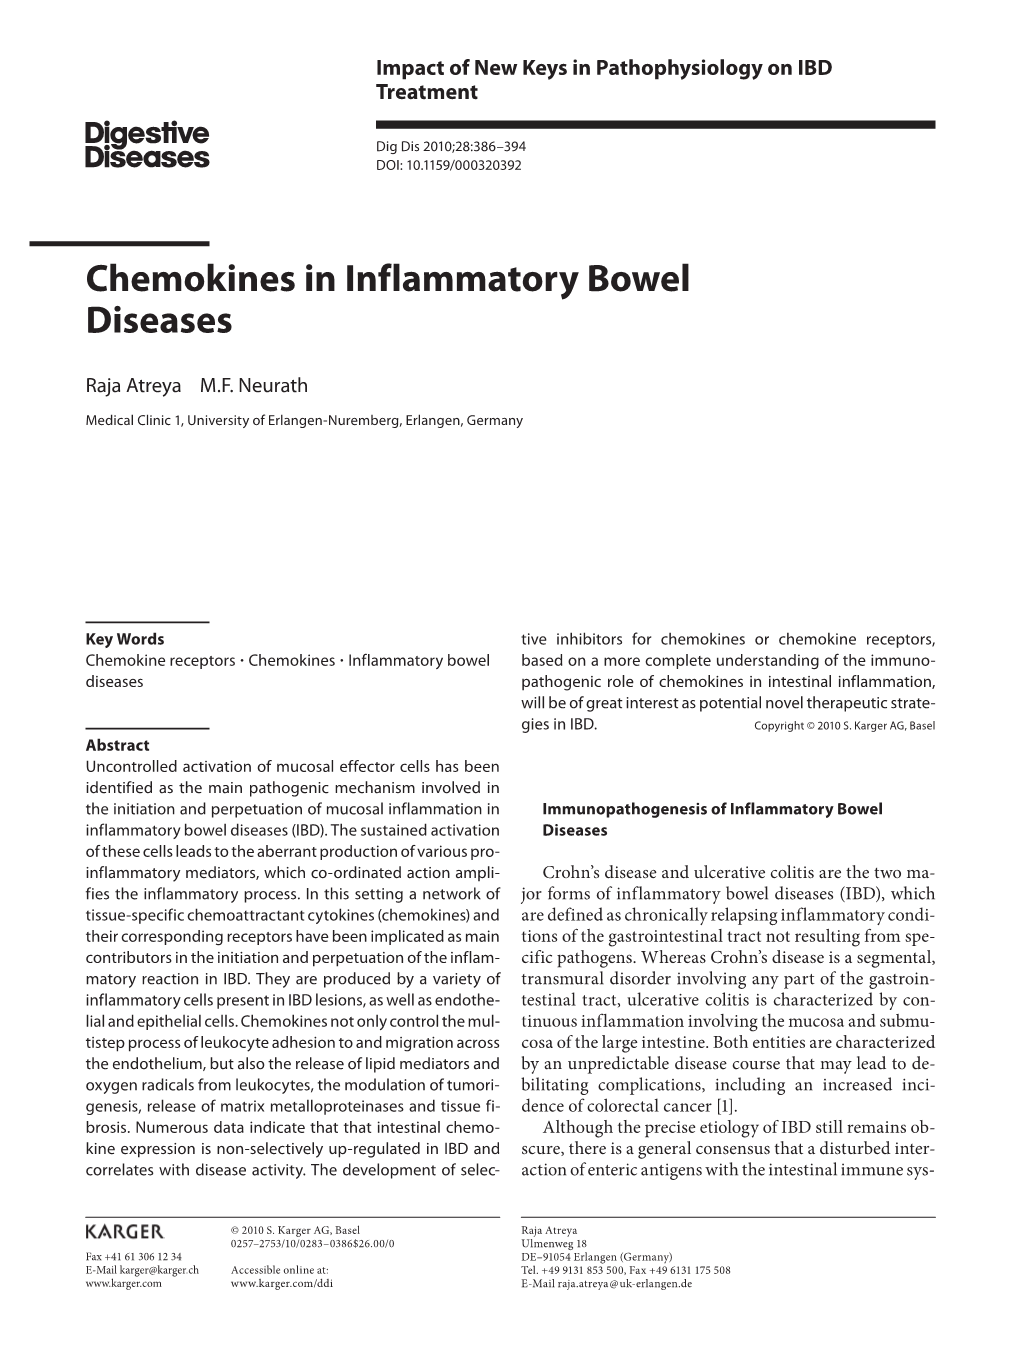 Chemokines in Inflammatory Bowel Diseases